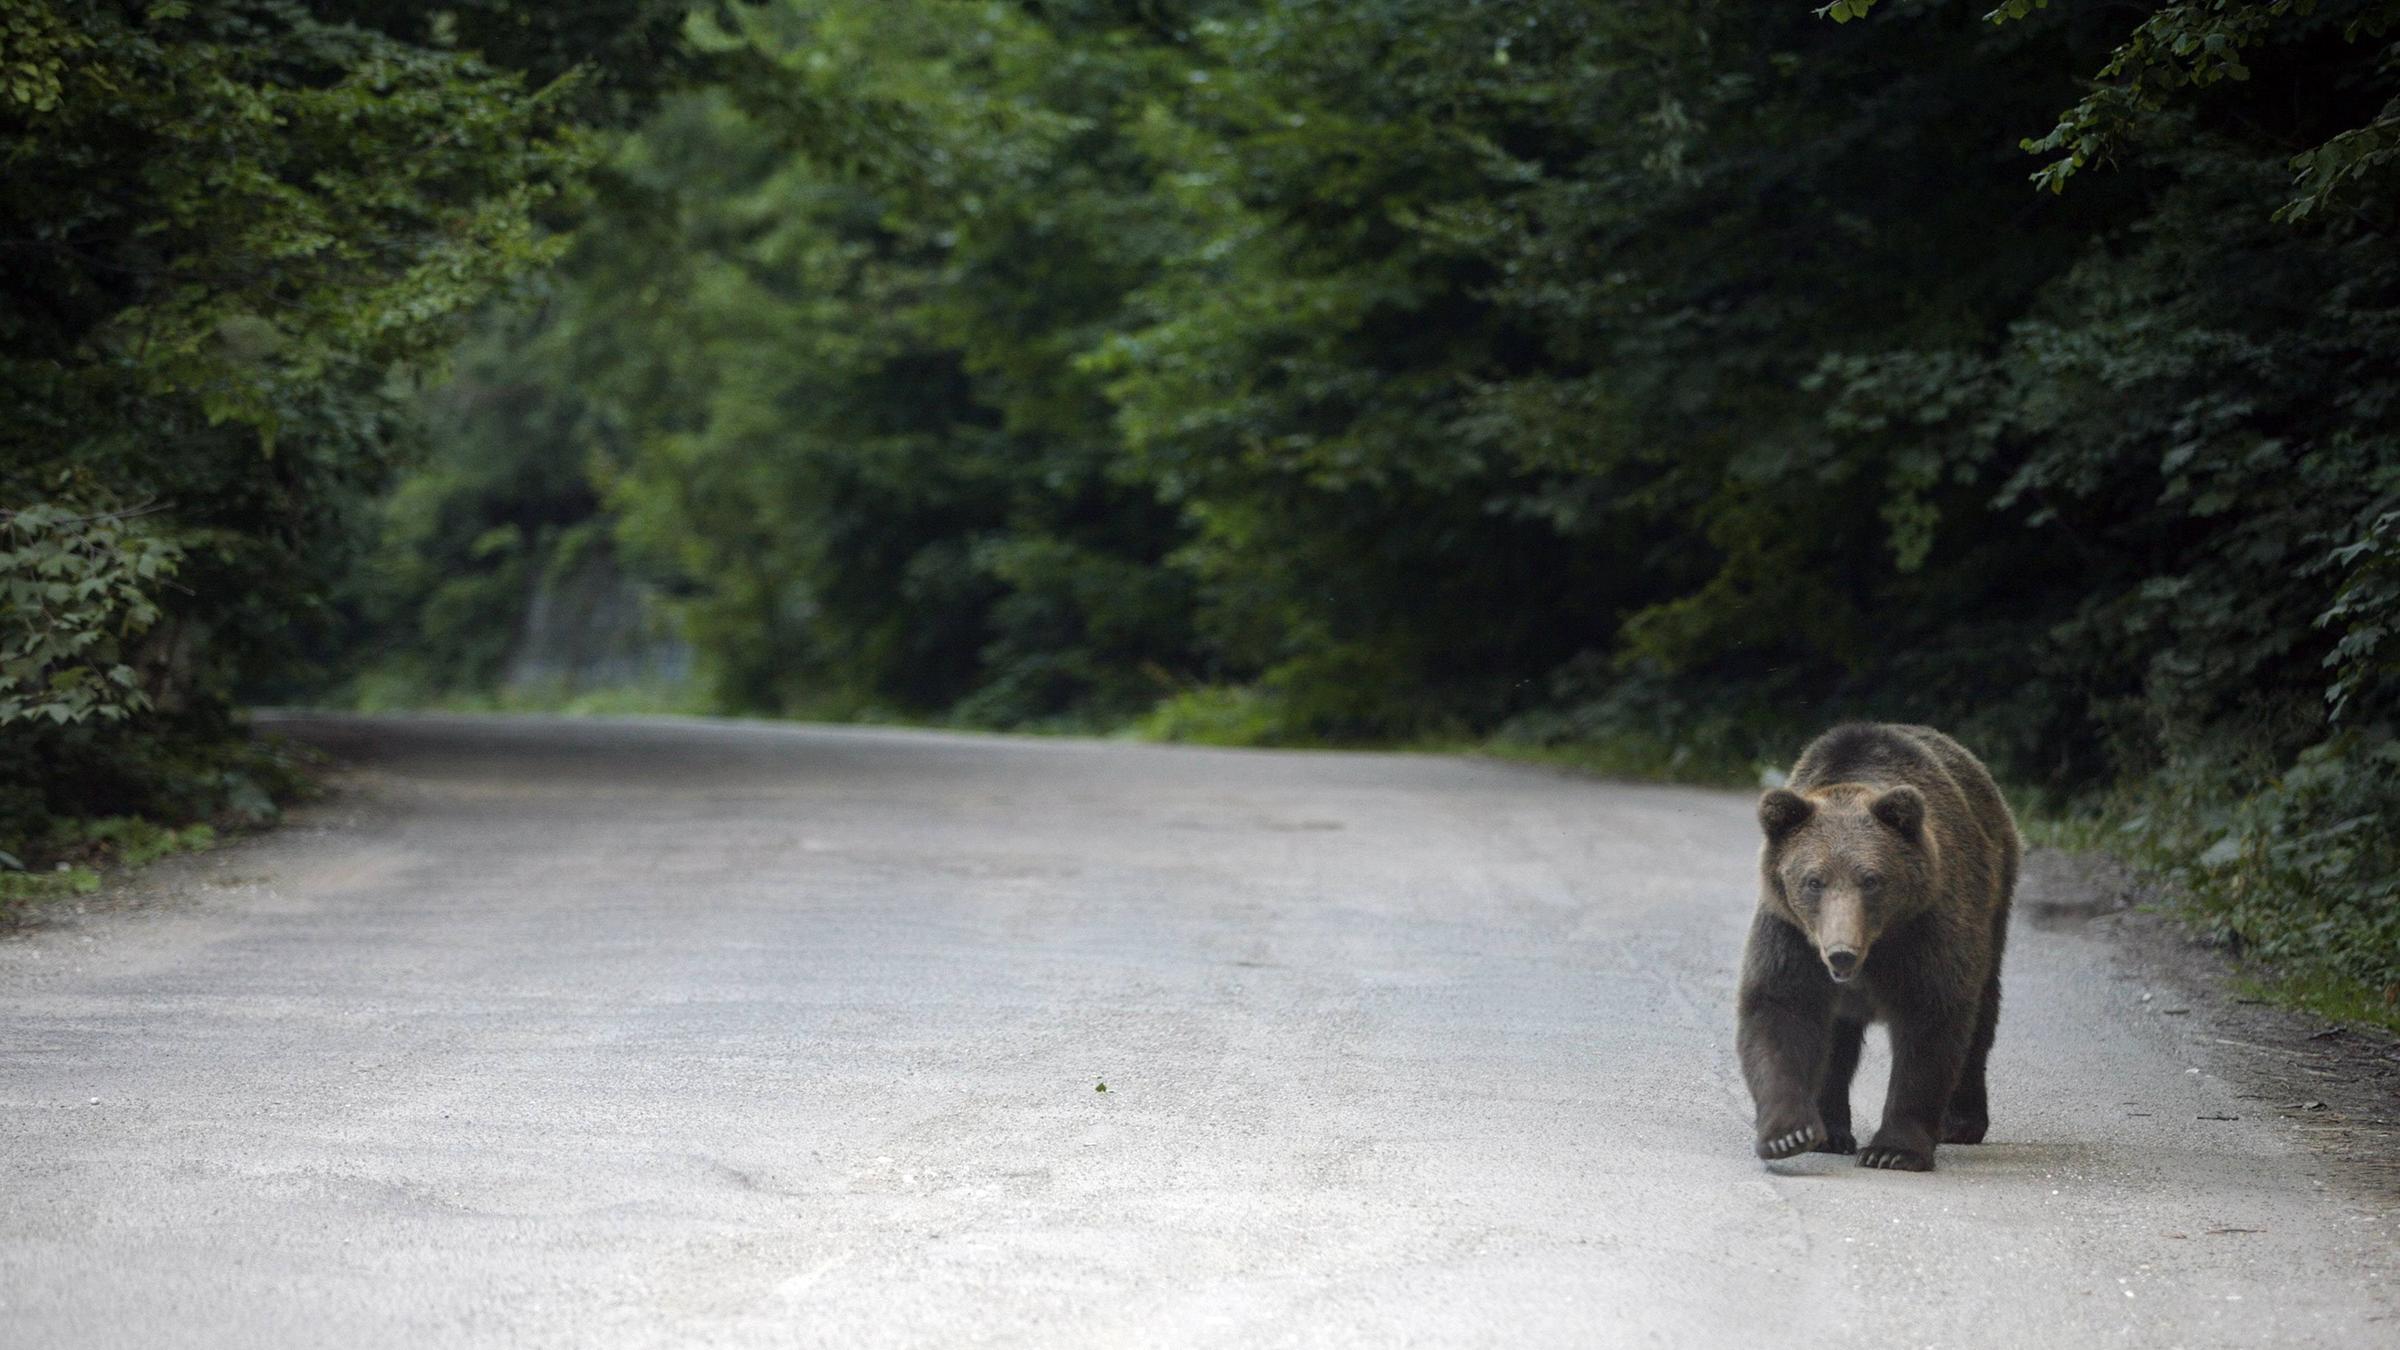 Бурый медведь скорость бега км ч. Медведь бежит. Медведь в лесу. Медведь на дороге. Бурый медведь на дороге.